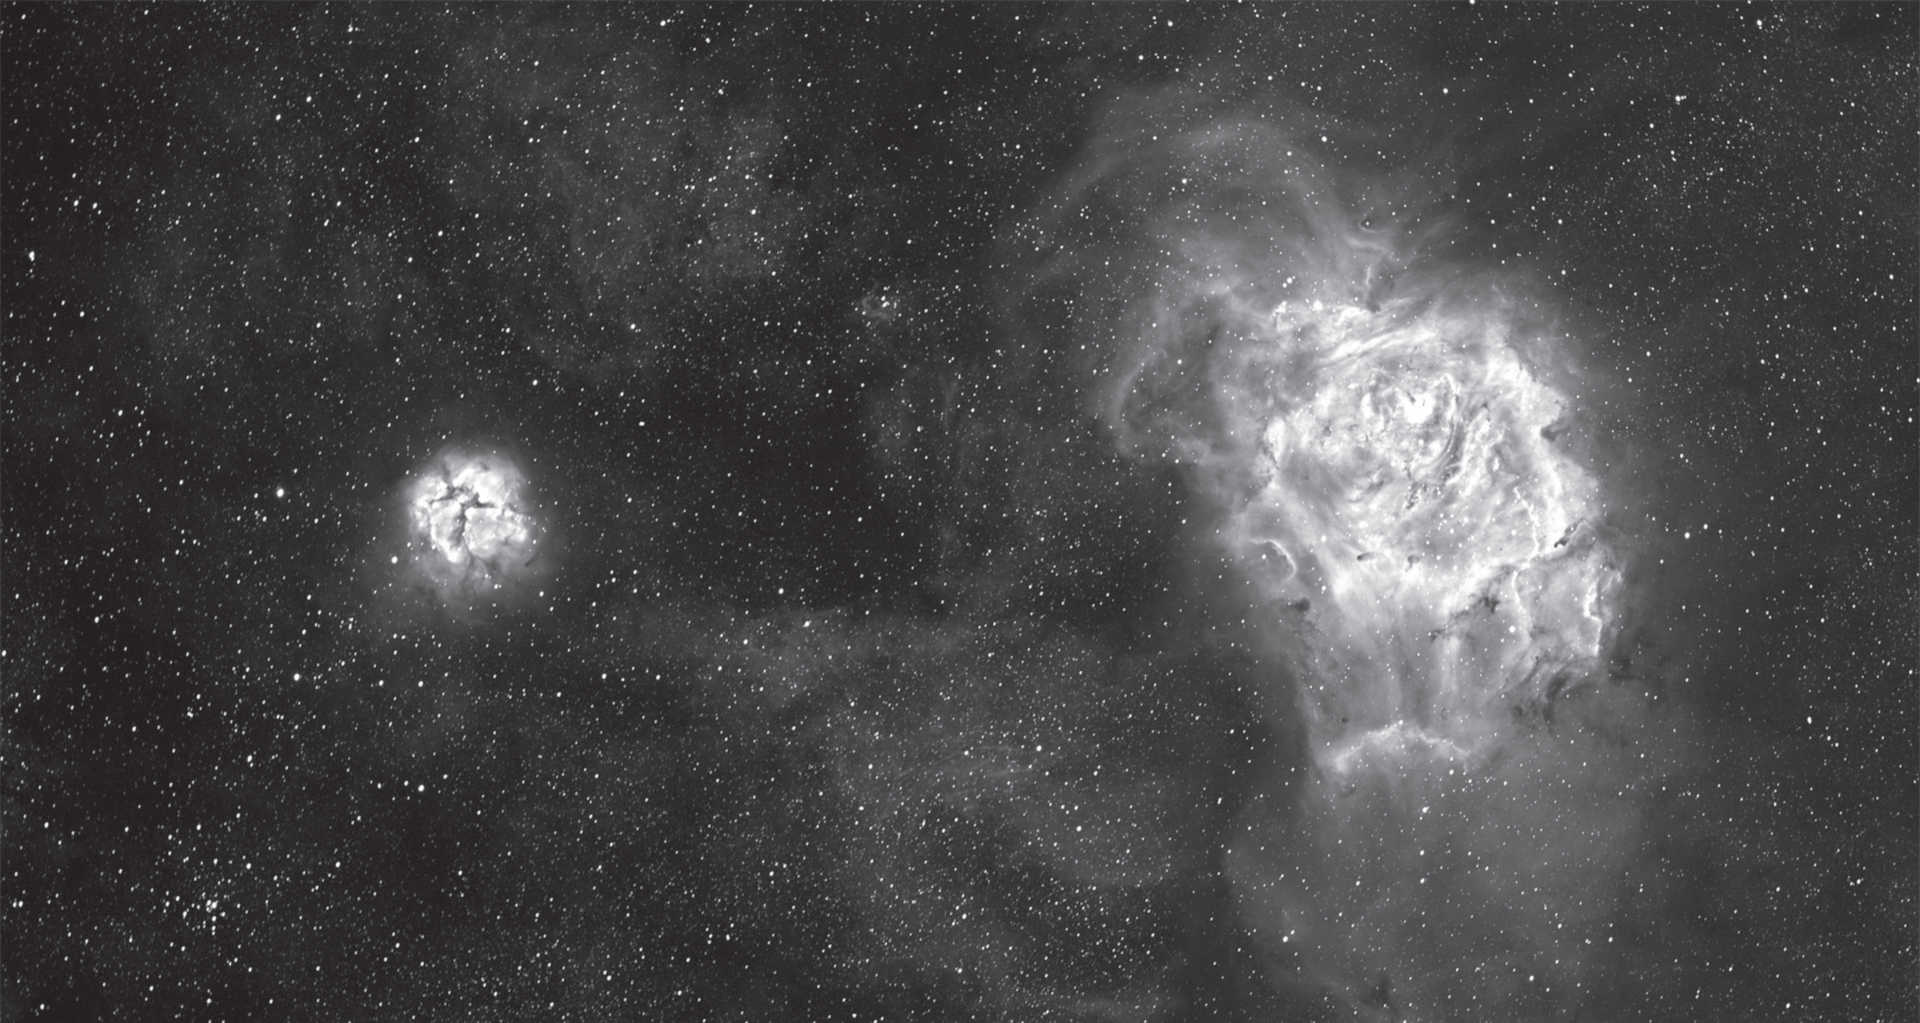 La nébuleuse de la Lagune et la nébuleuse Trifide (M 8 et M 20) dans la constellation du Sagittaire. Empilement d’images composé de six prises de vues avec un temps d’exposition de 1 minute chacune, six prises de vues avec un temps d’exposition de 15 minutes chacune et 2 prises de vues avec un temps d’exposition de 60 minutes chacune. Caméra : SBIG STF-8300, filtre Hα avec bande passante 35 nm, optique : lunette de 130 mm, distance focale 1 000 mm. U. Dittler